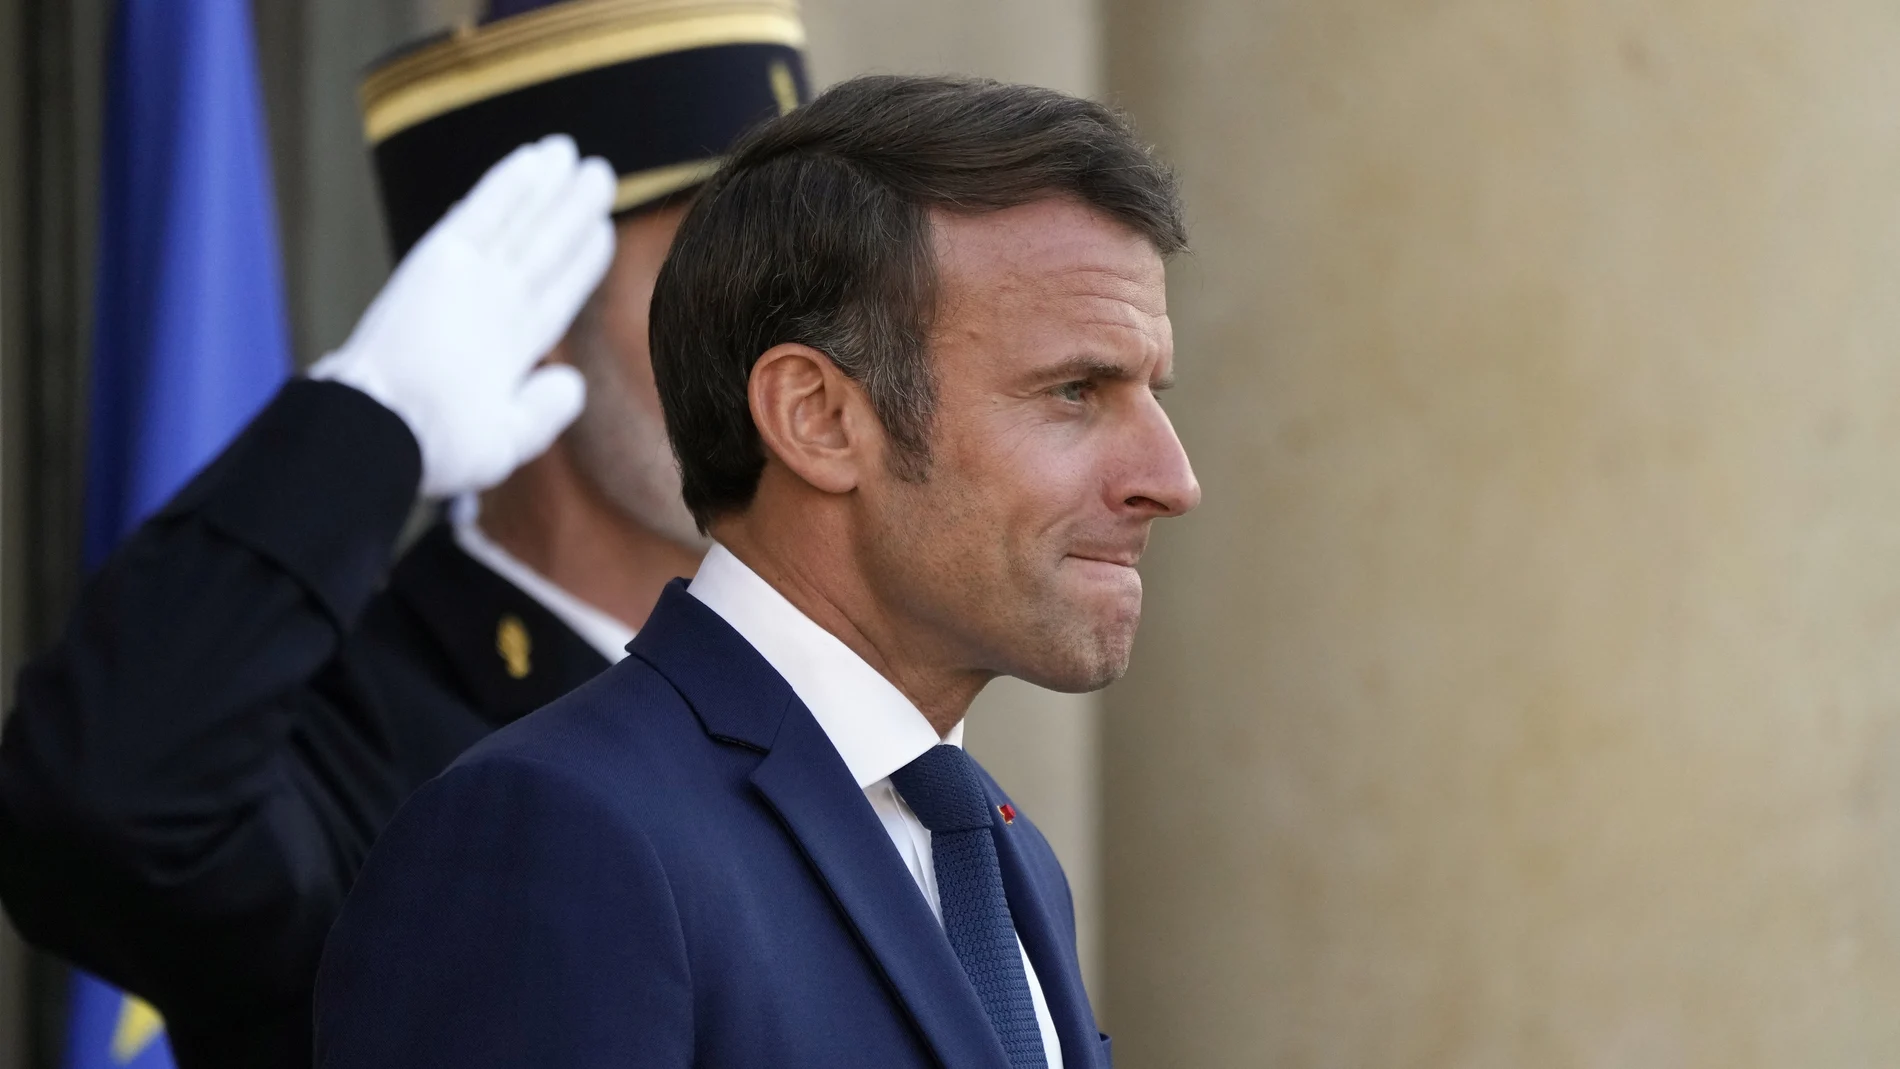 El presidente francés, Emmanuel Macron, necesita una cómoda mayoría en la Asamblea Nacional para gobernar en su segundo mandato